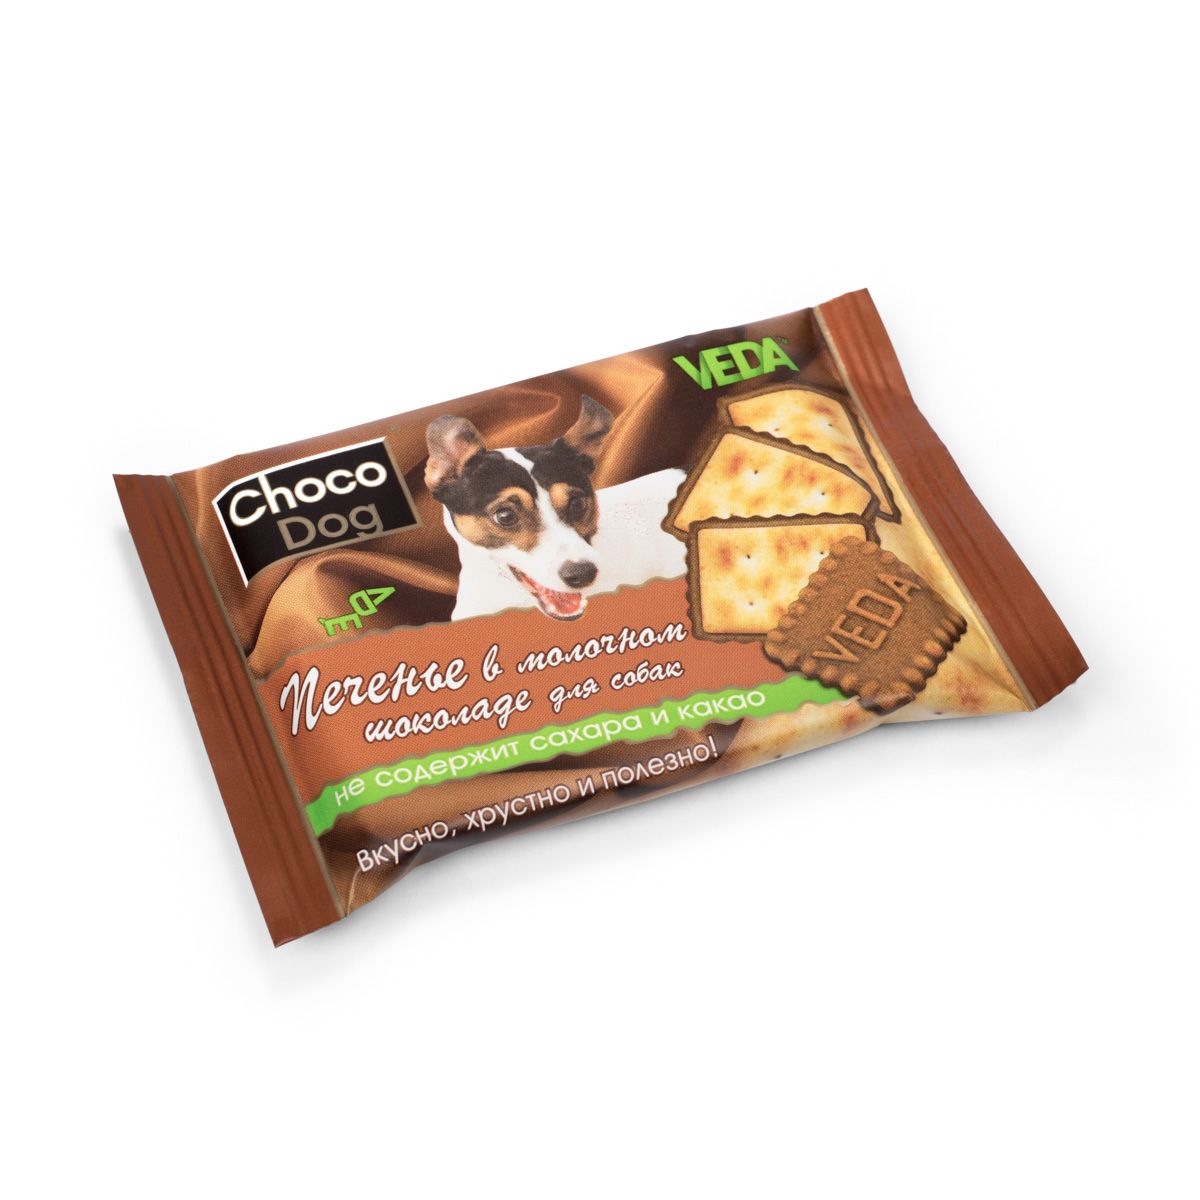 Лакомство для собак VEDA Choco Dog, печенье в молочном шоколаде, 14 шт по 30 г